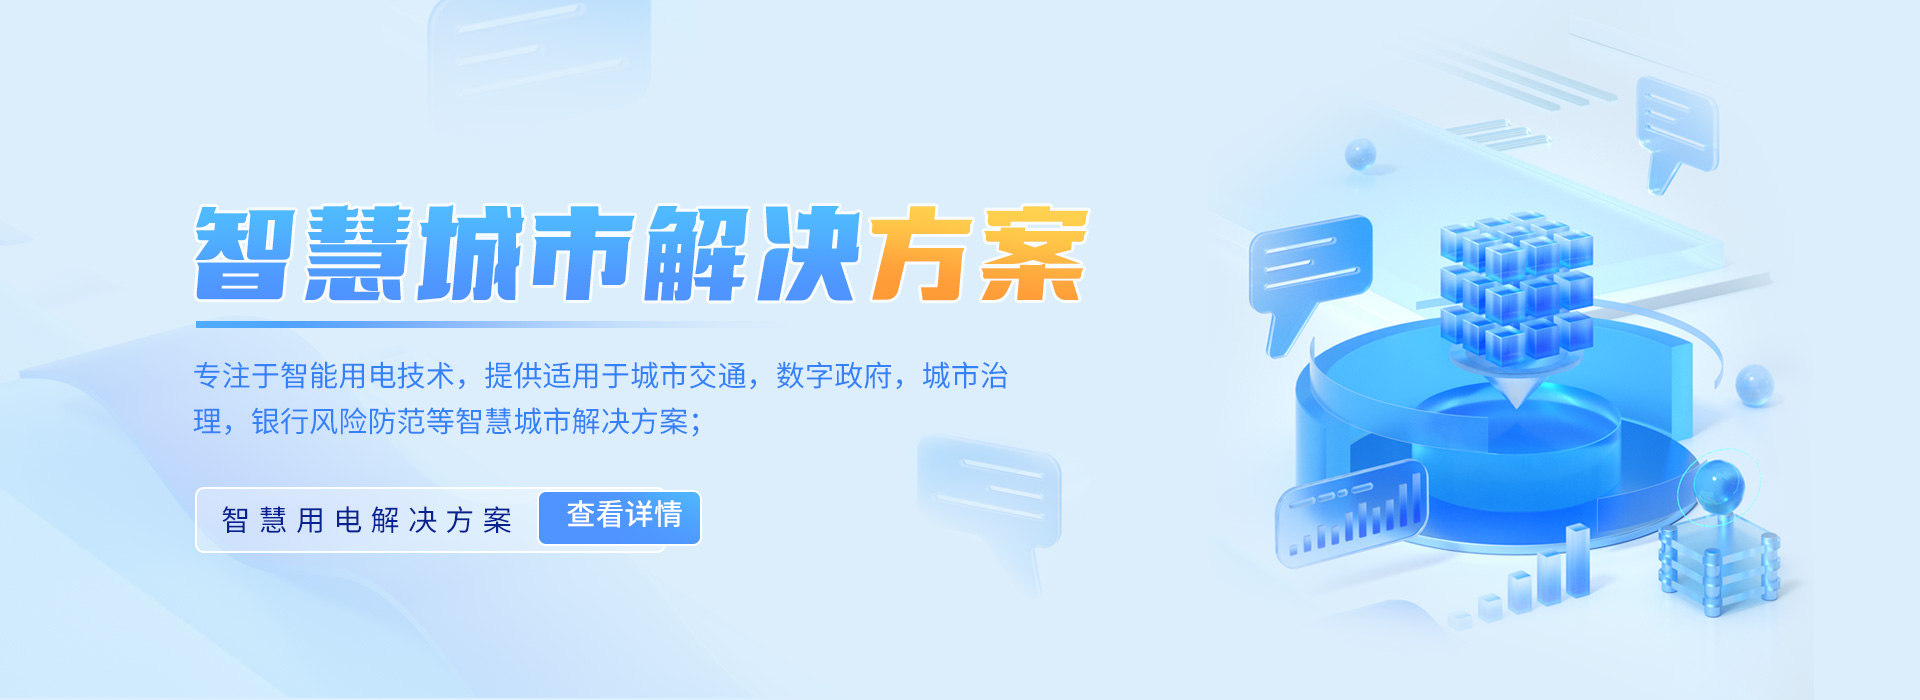 杭州金政融合信息技术有限公司